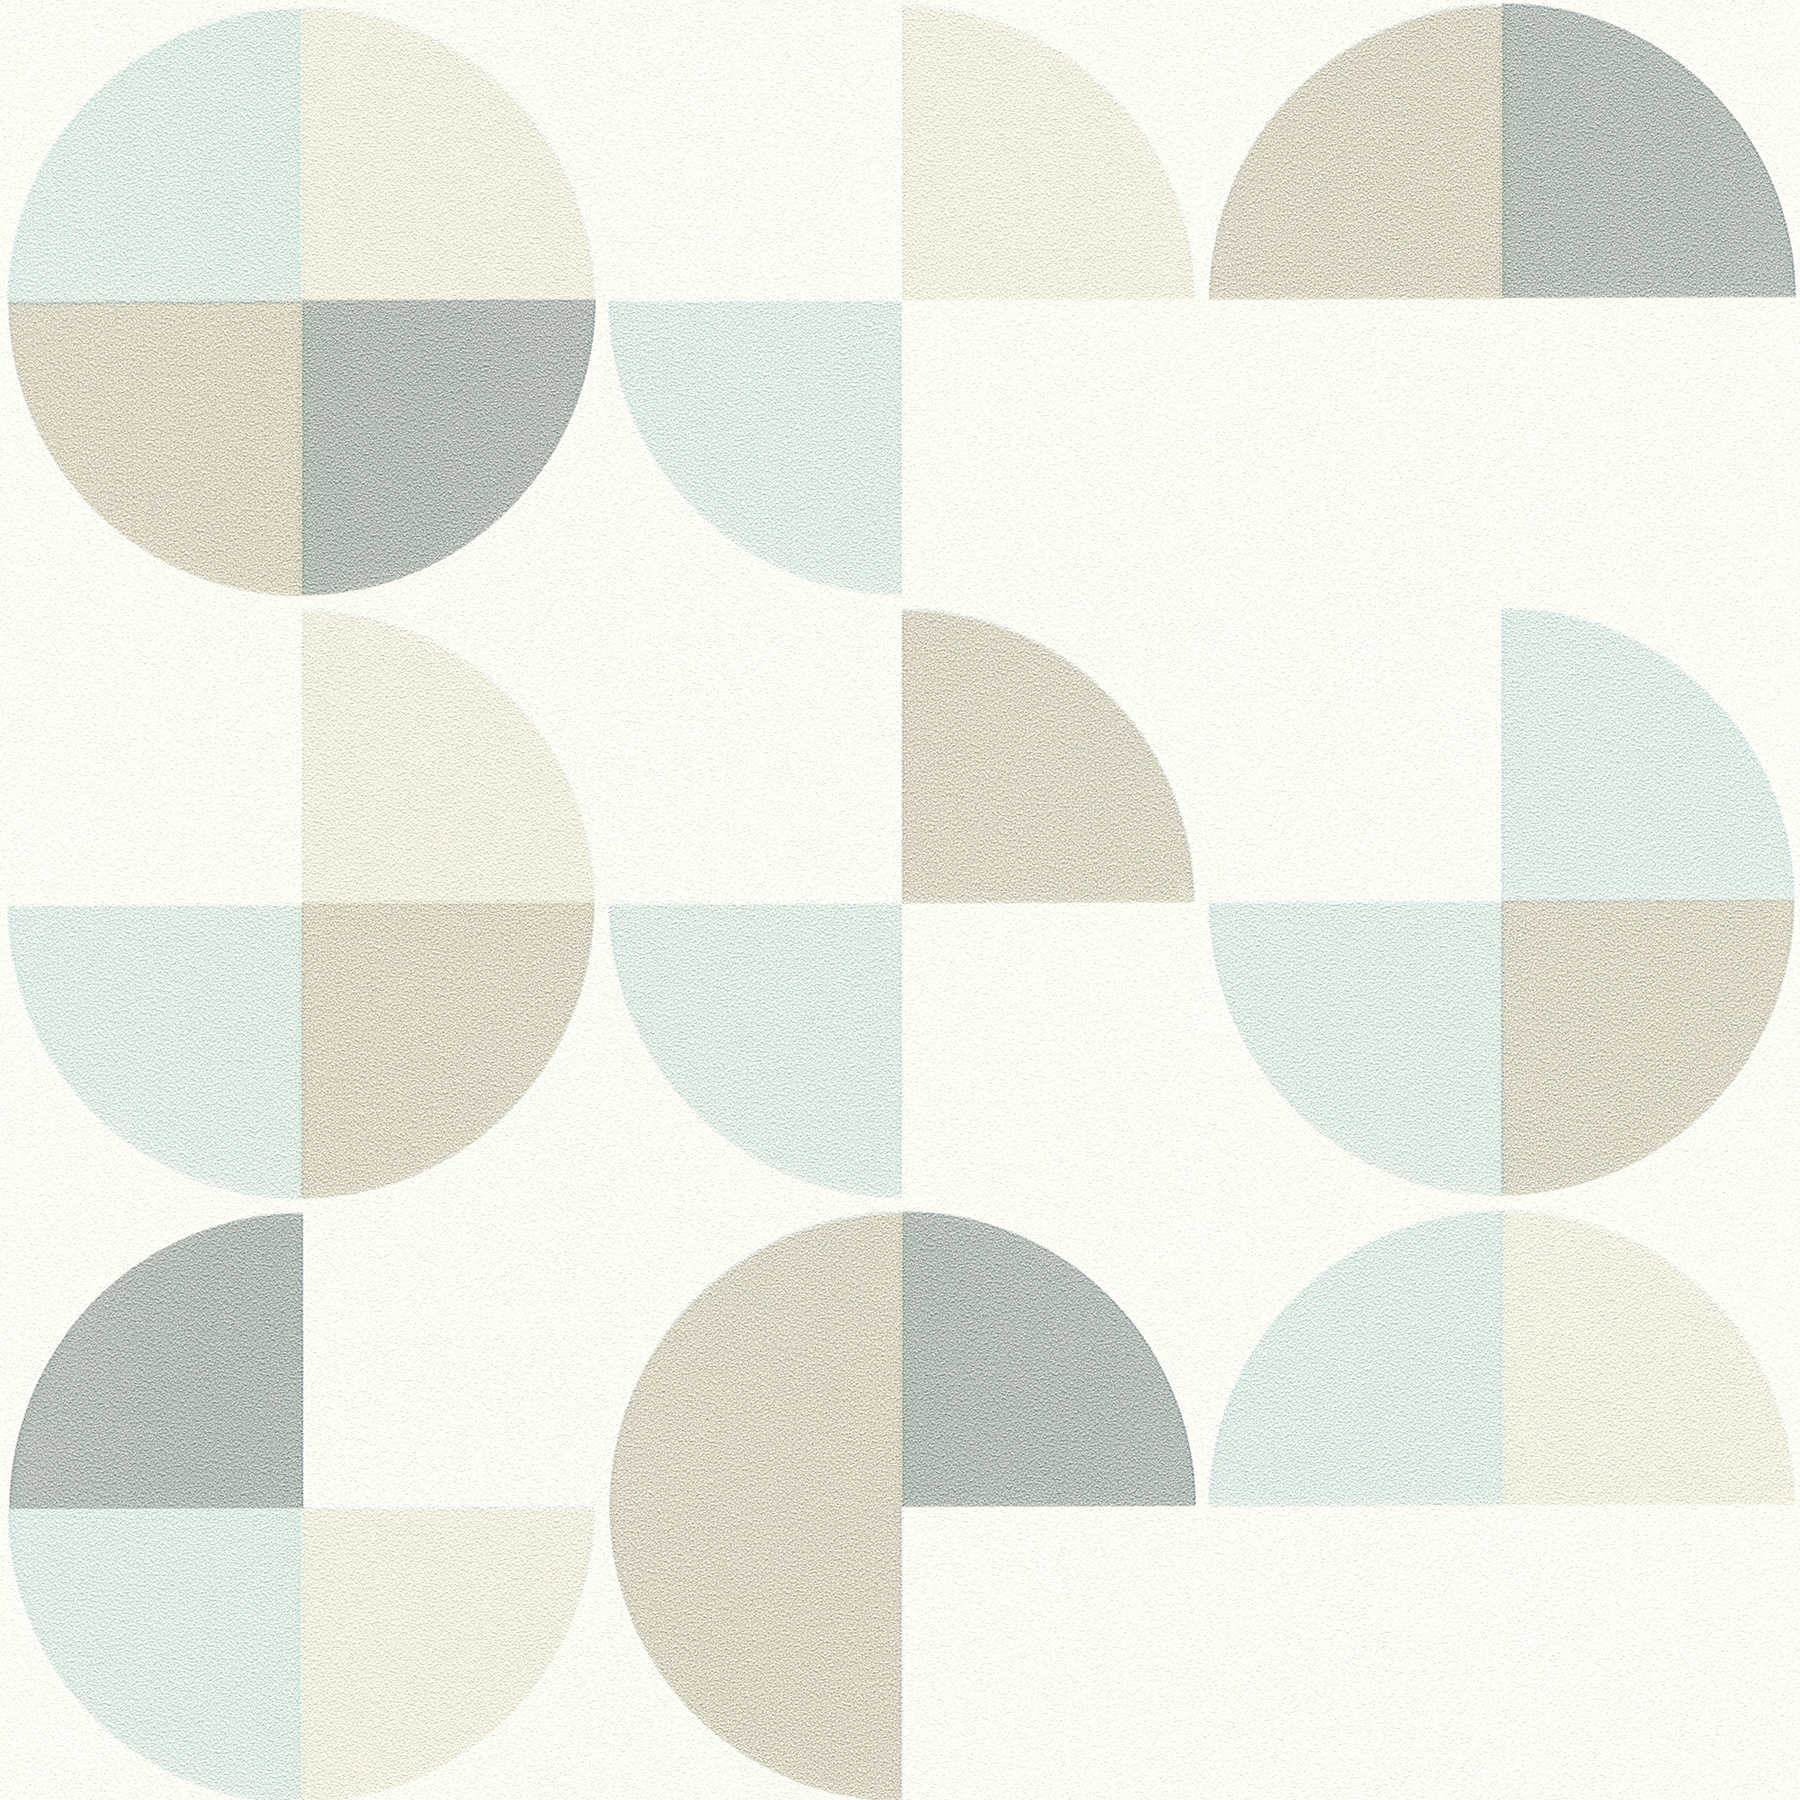 Geometrisch patroonbehang in Scandinavische stijl - blauw, grijs, beige
